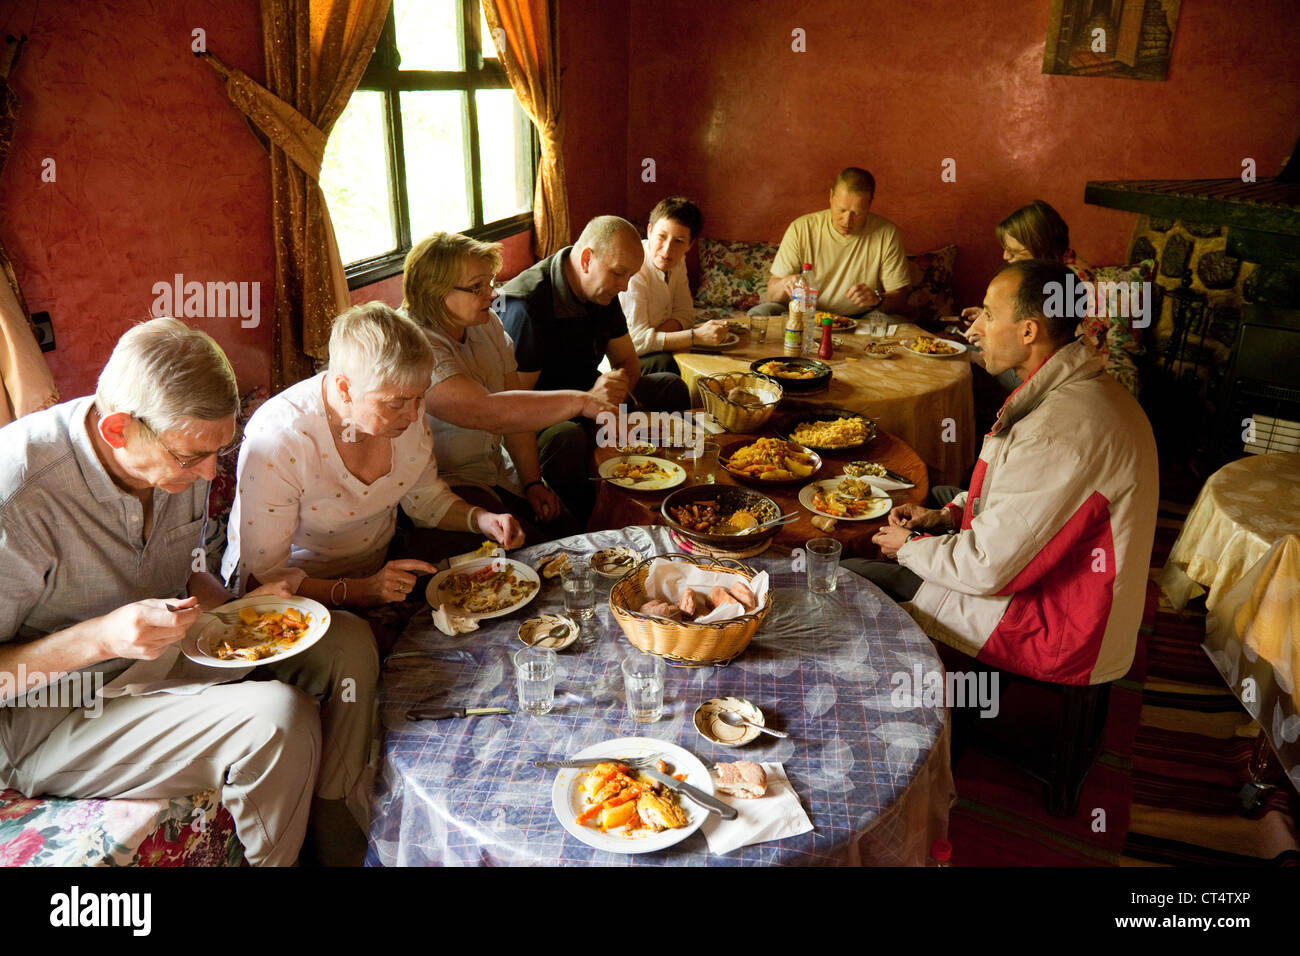 Les touristes ayant un repas à l'intérieur d'une maison berbère traditionnelle, Haut Atlas, Maroc Sud Banque D'Images